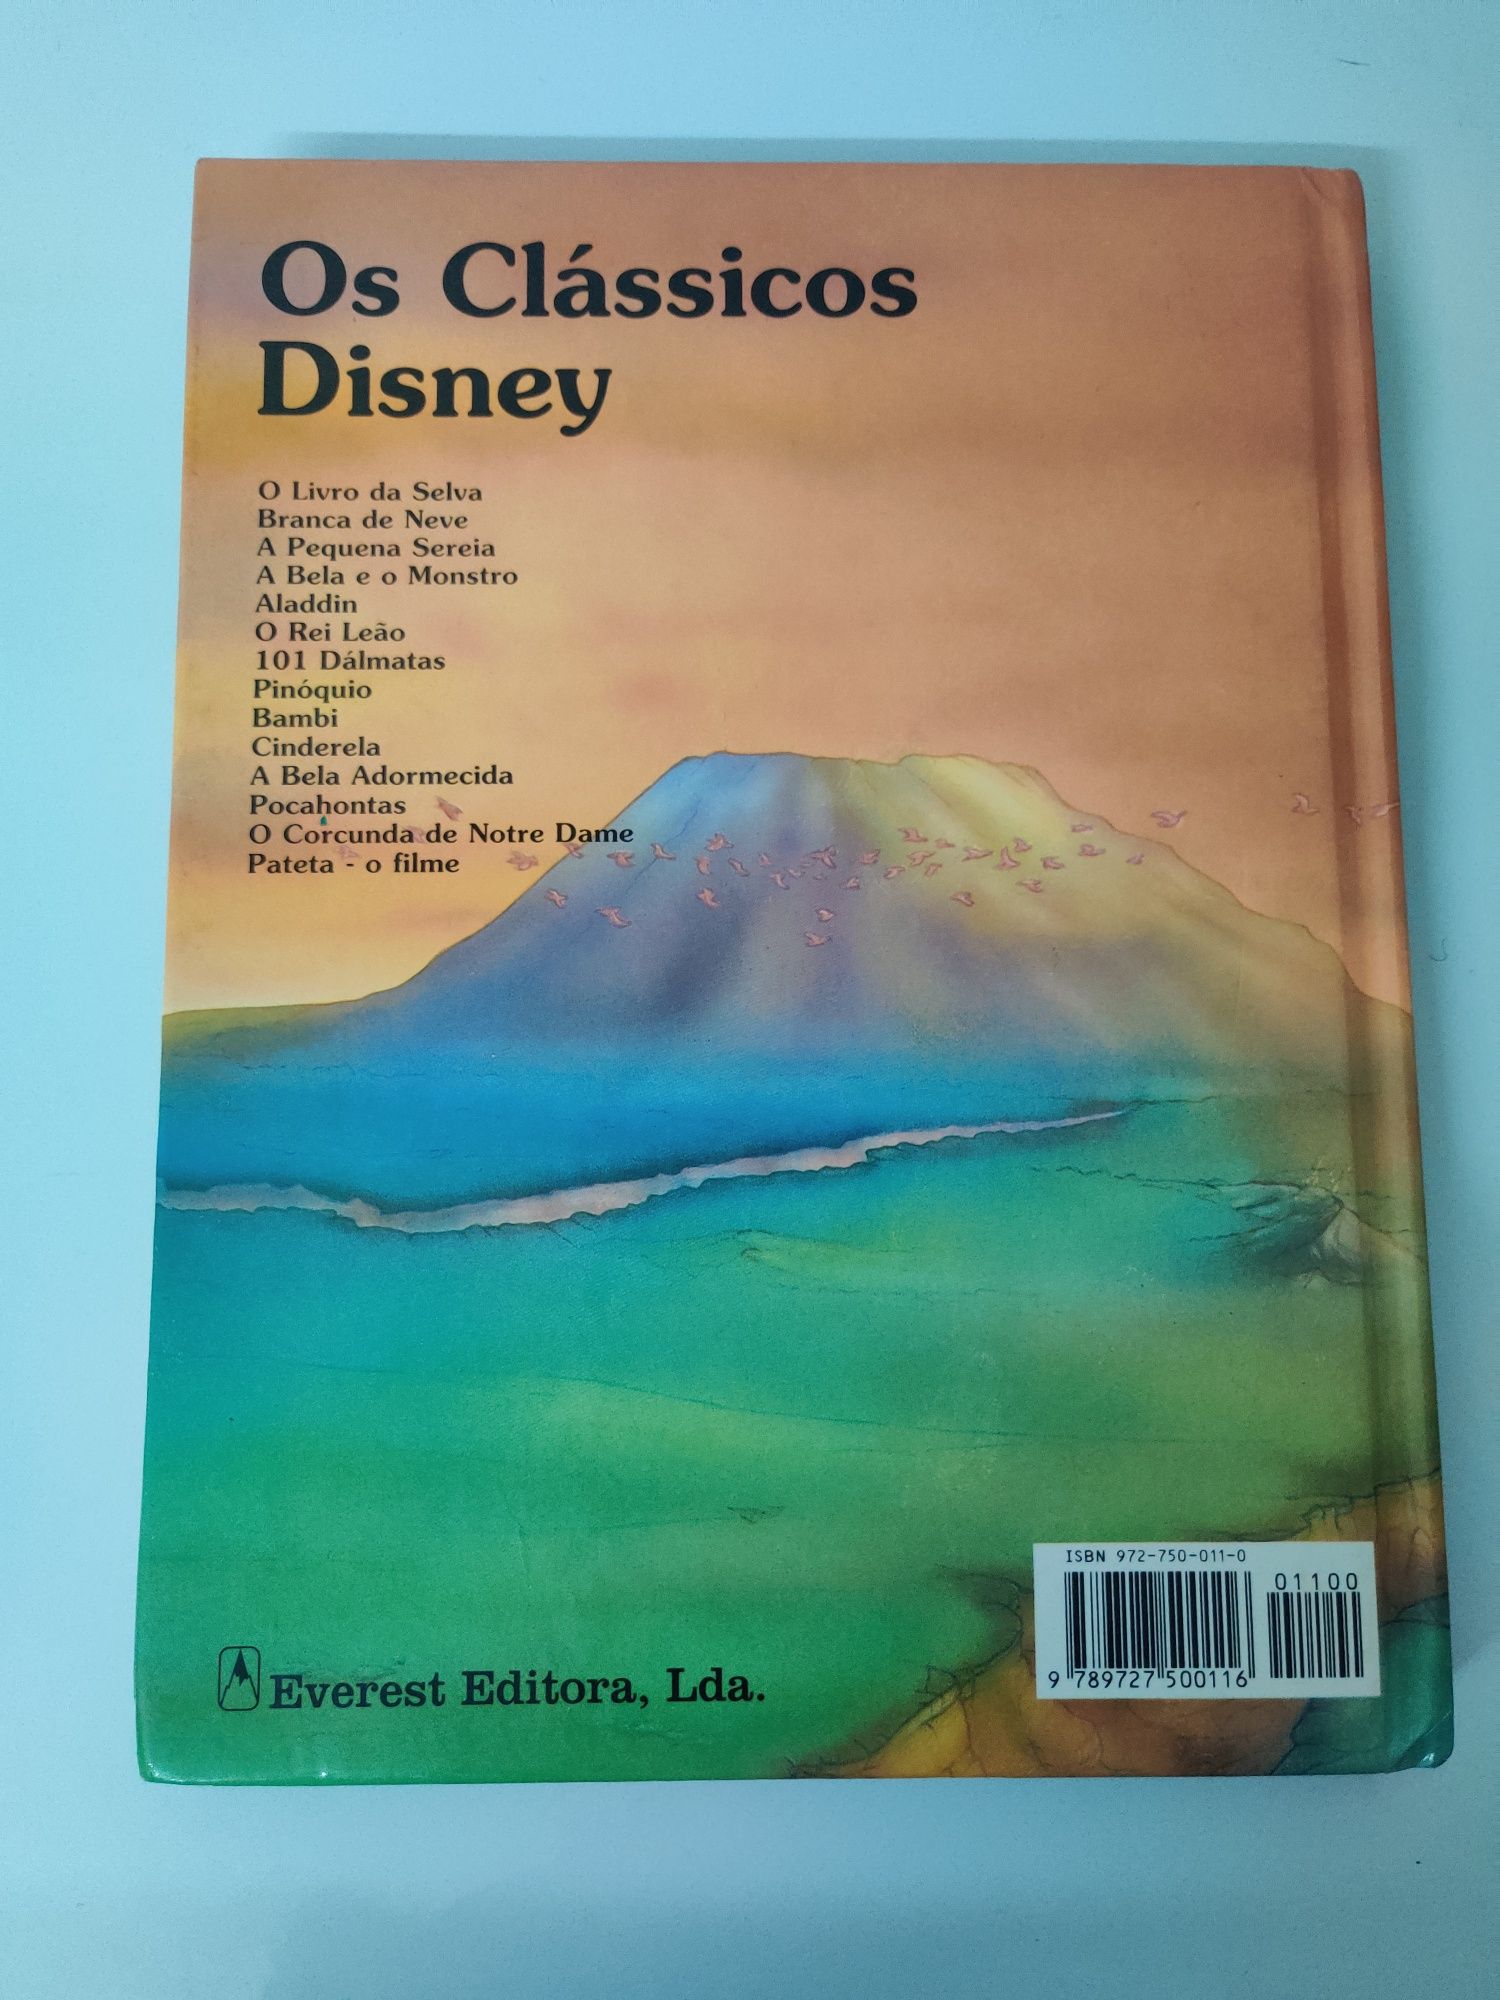 O Rei Leāo - Os Clássicos Disney (livro)